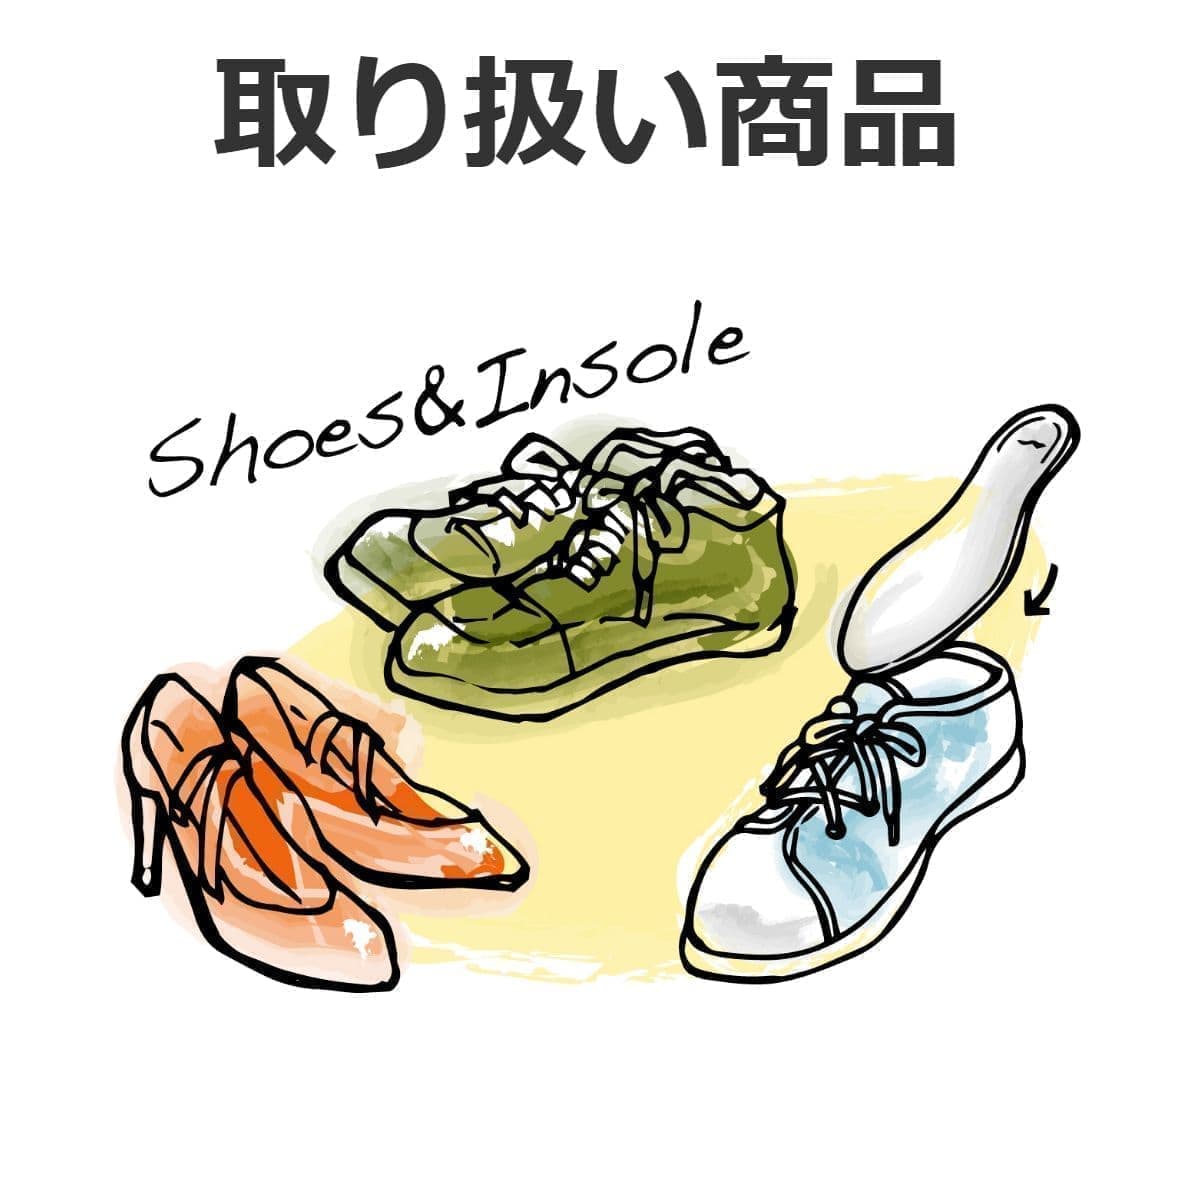 様々な靴のイラスト